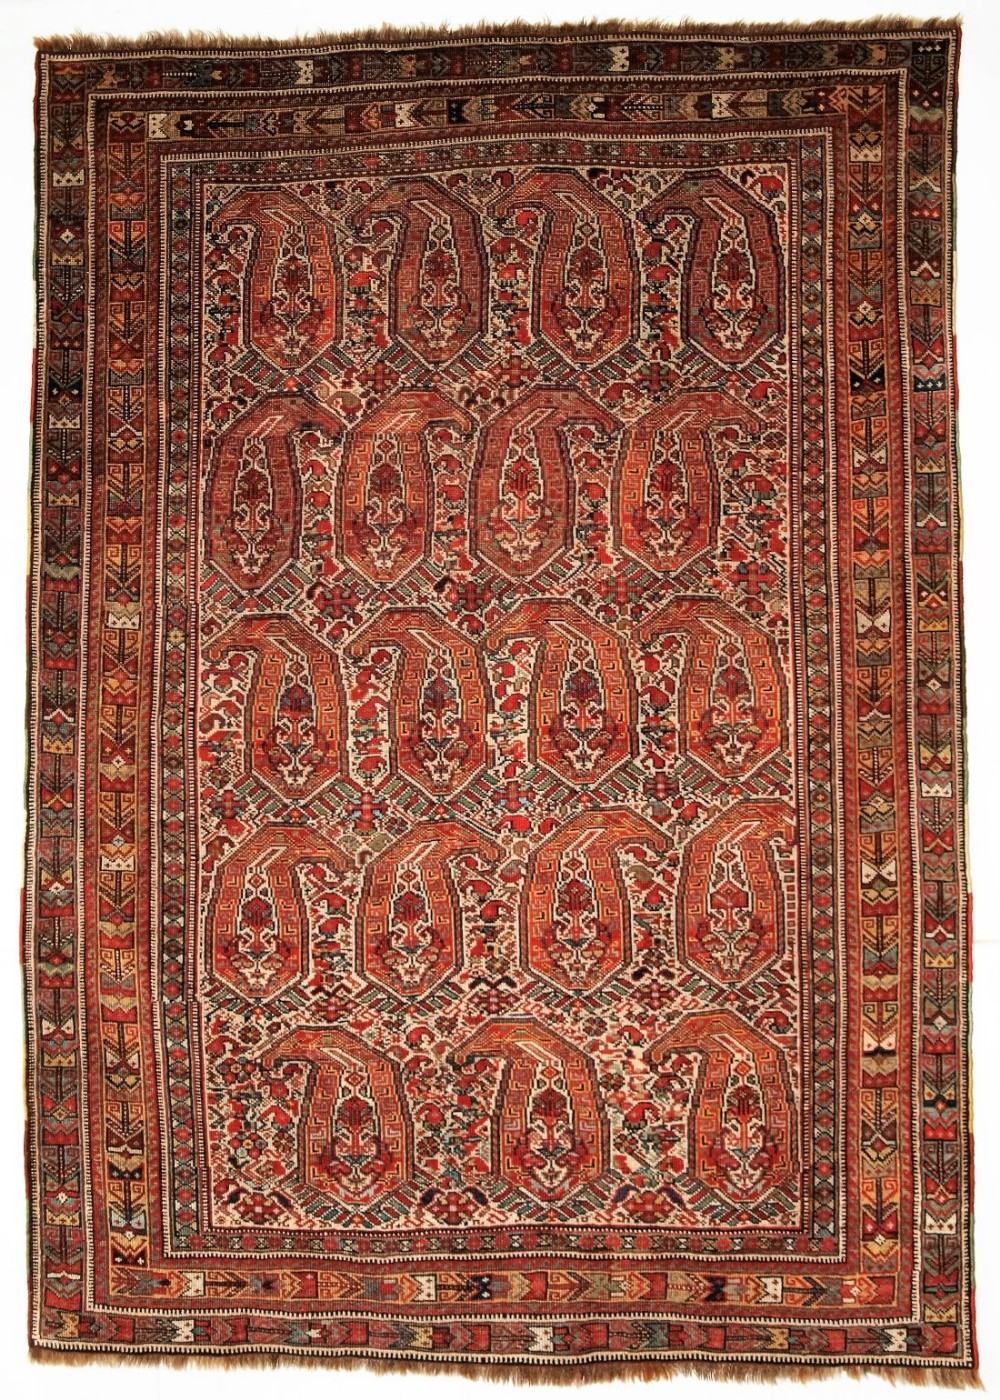 antique nomadic tribal khamseh rug with boteh design circa 1880